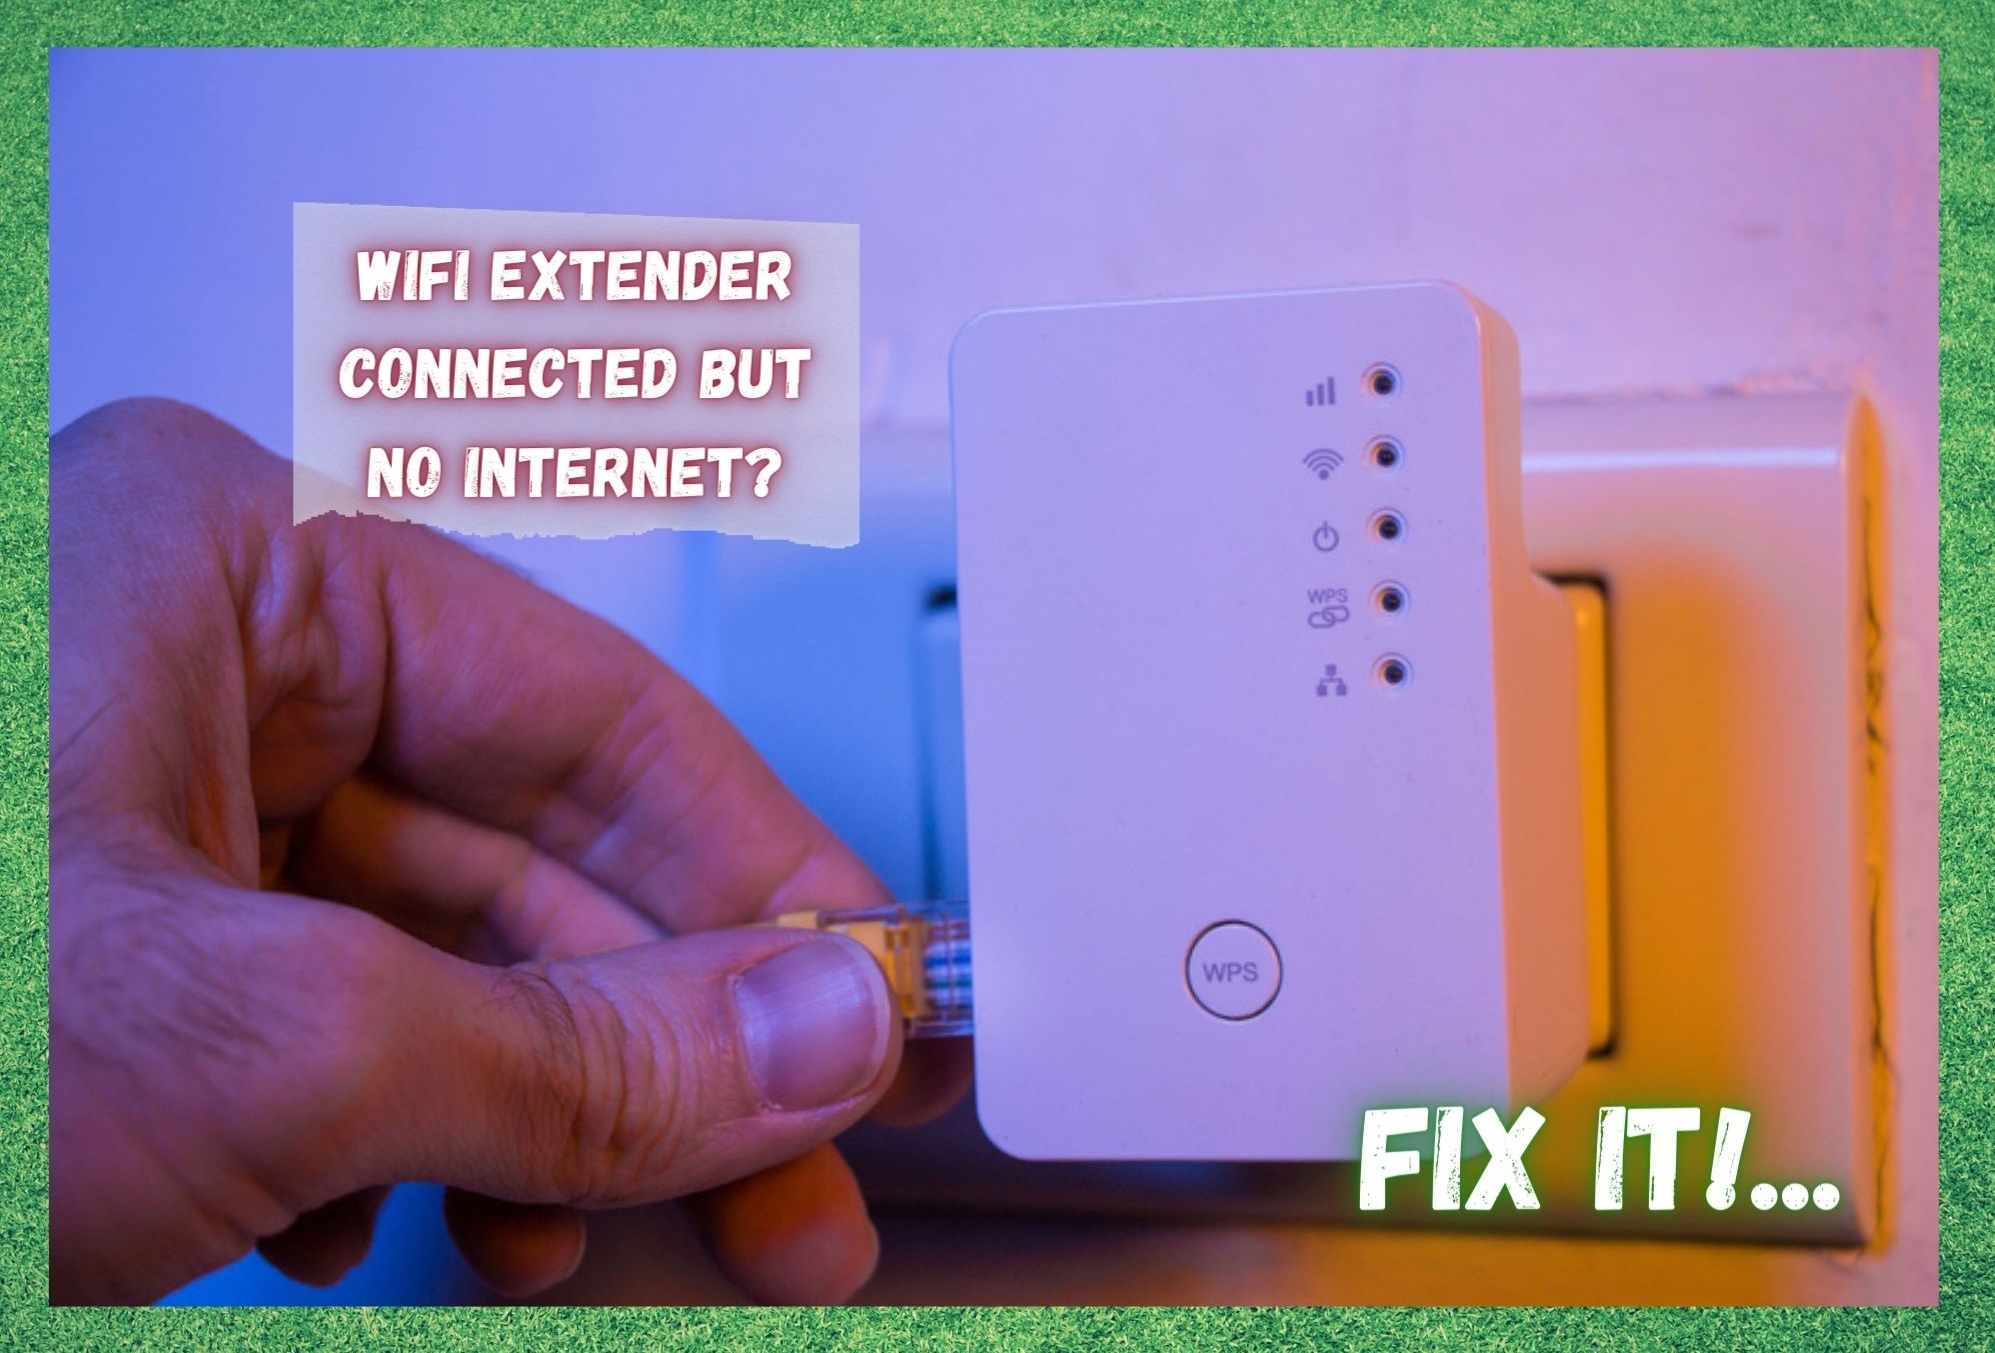 Podaljševalnik WiFi povezan, vendar brez interneta: 5 načinov za odpravo